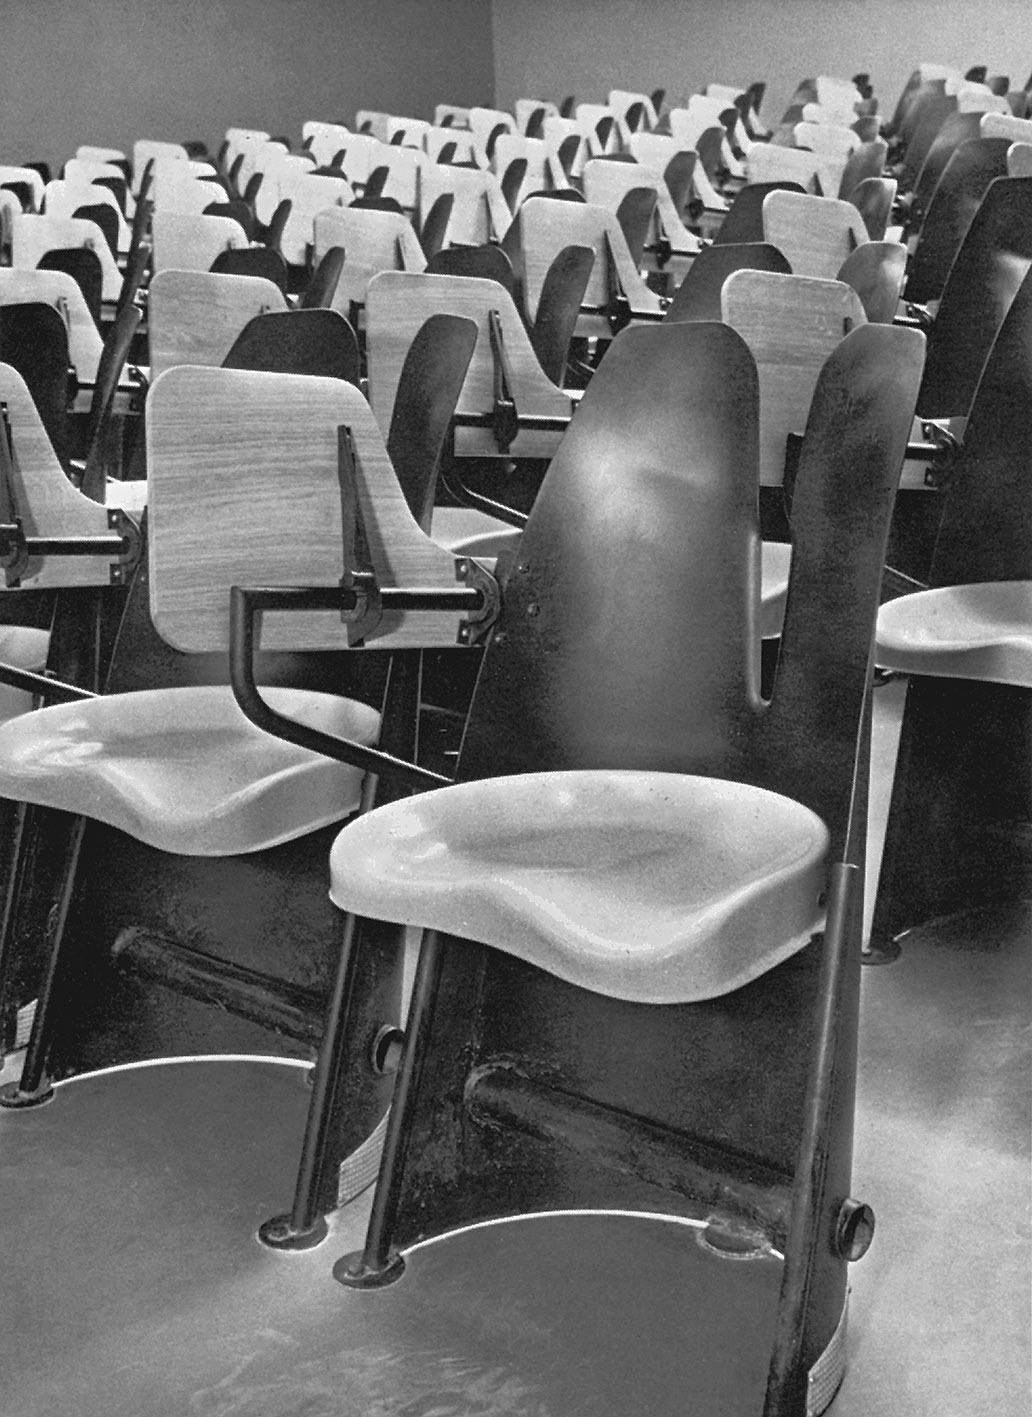 Salle de conférences aménagée avec des fauteuils d’amphithéâtre dits Bergères, c. 1952.